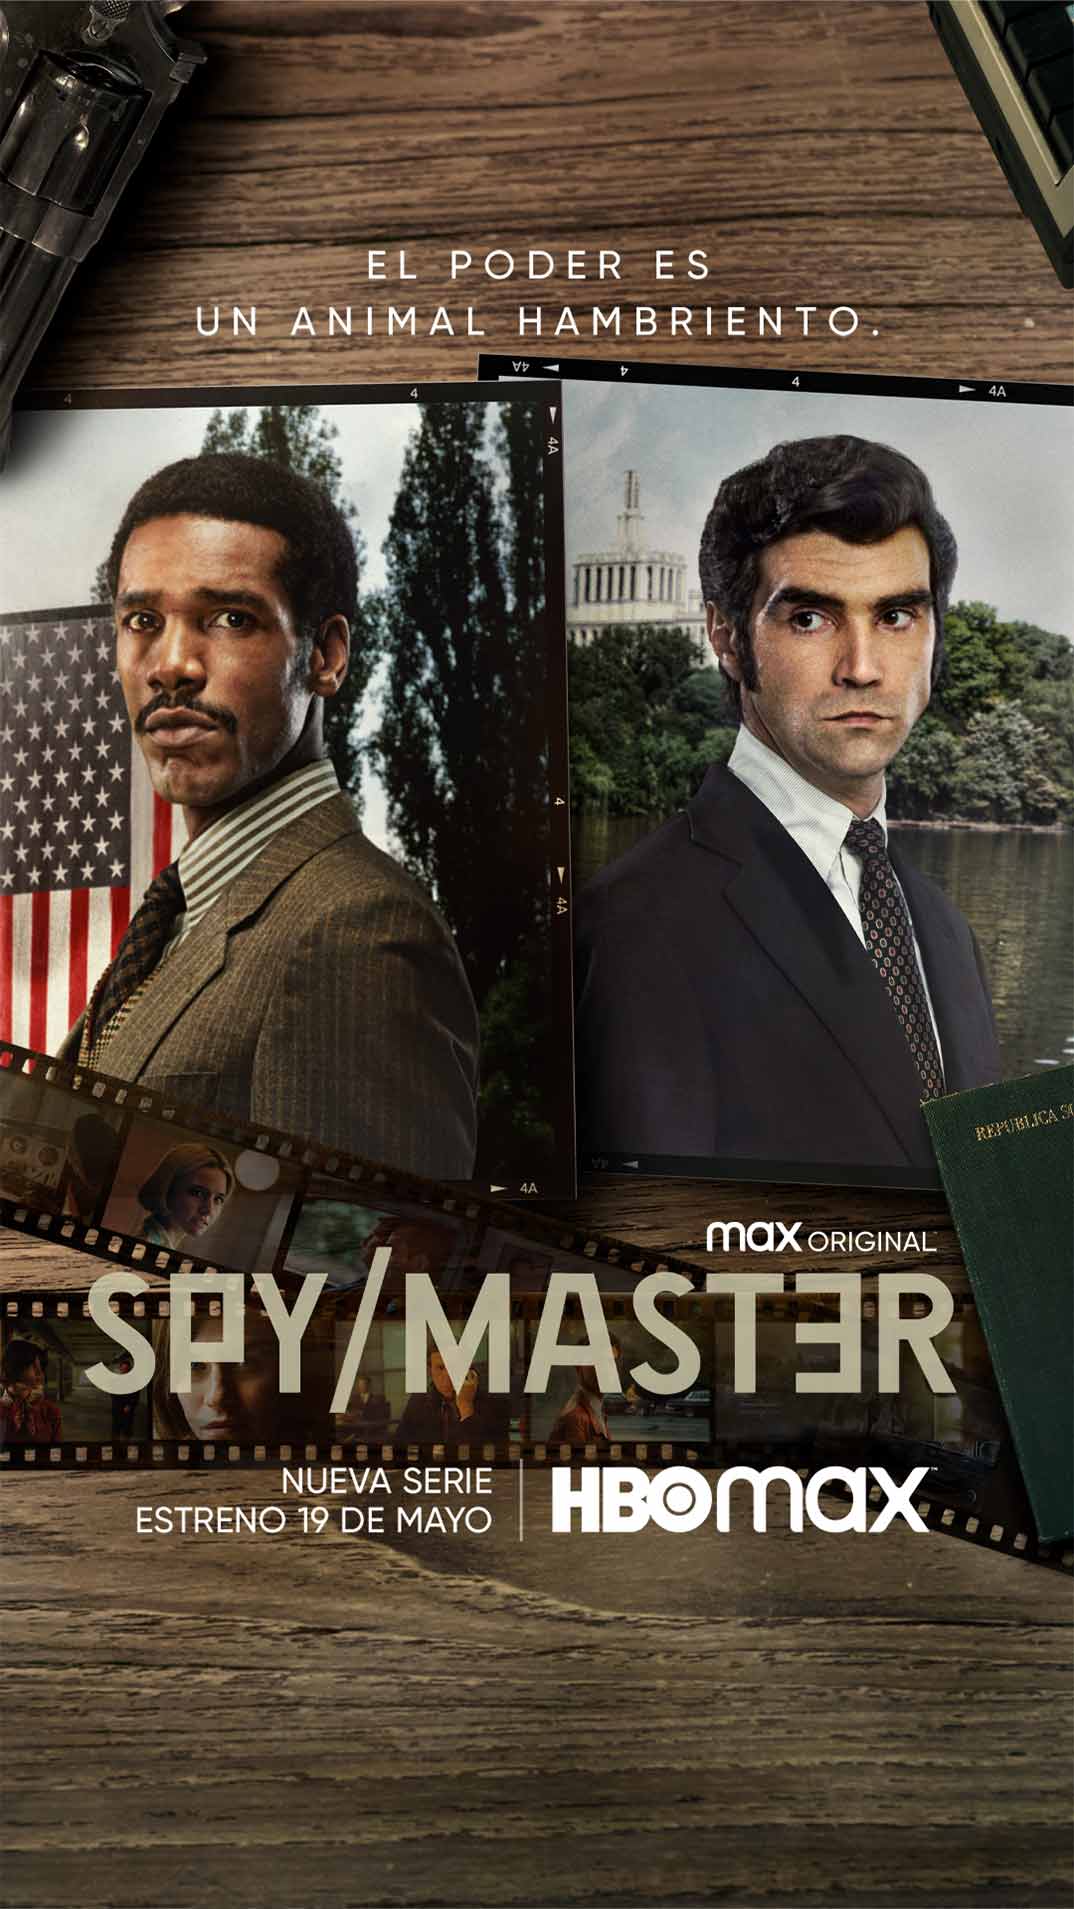 Spy/Master © HBO Max 